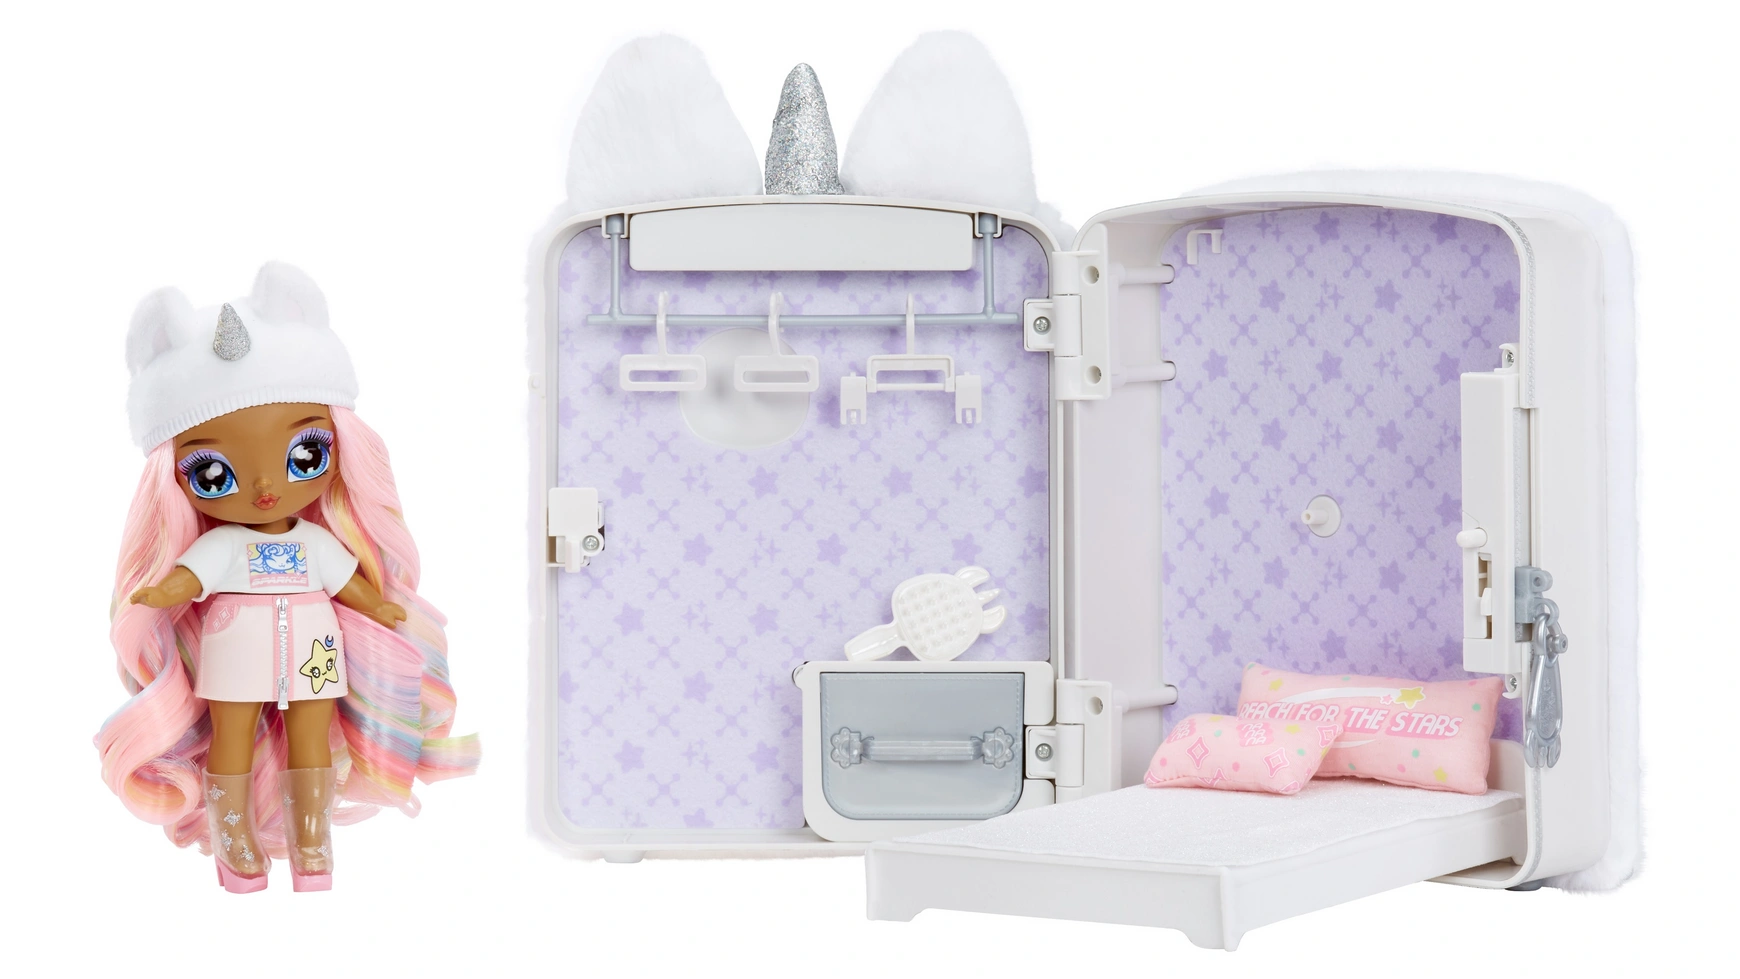 Na Na Na Surprise Рюкзак-сюрприз 3-в-1, игровой набор с единорогом для спальни Whitney Sparkles